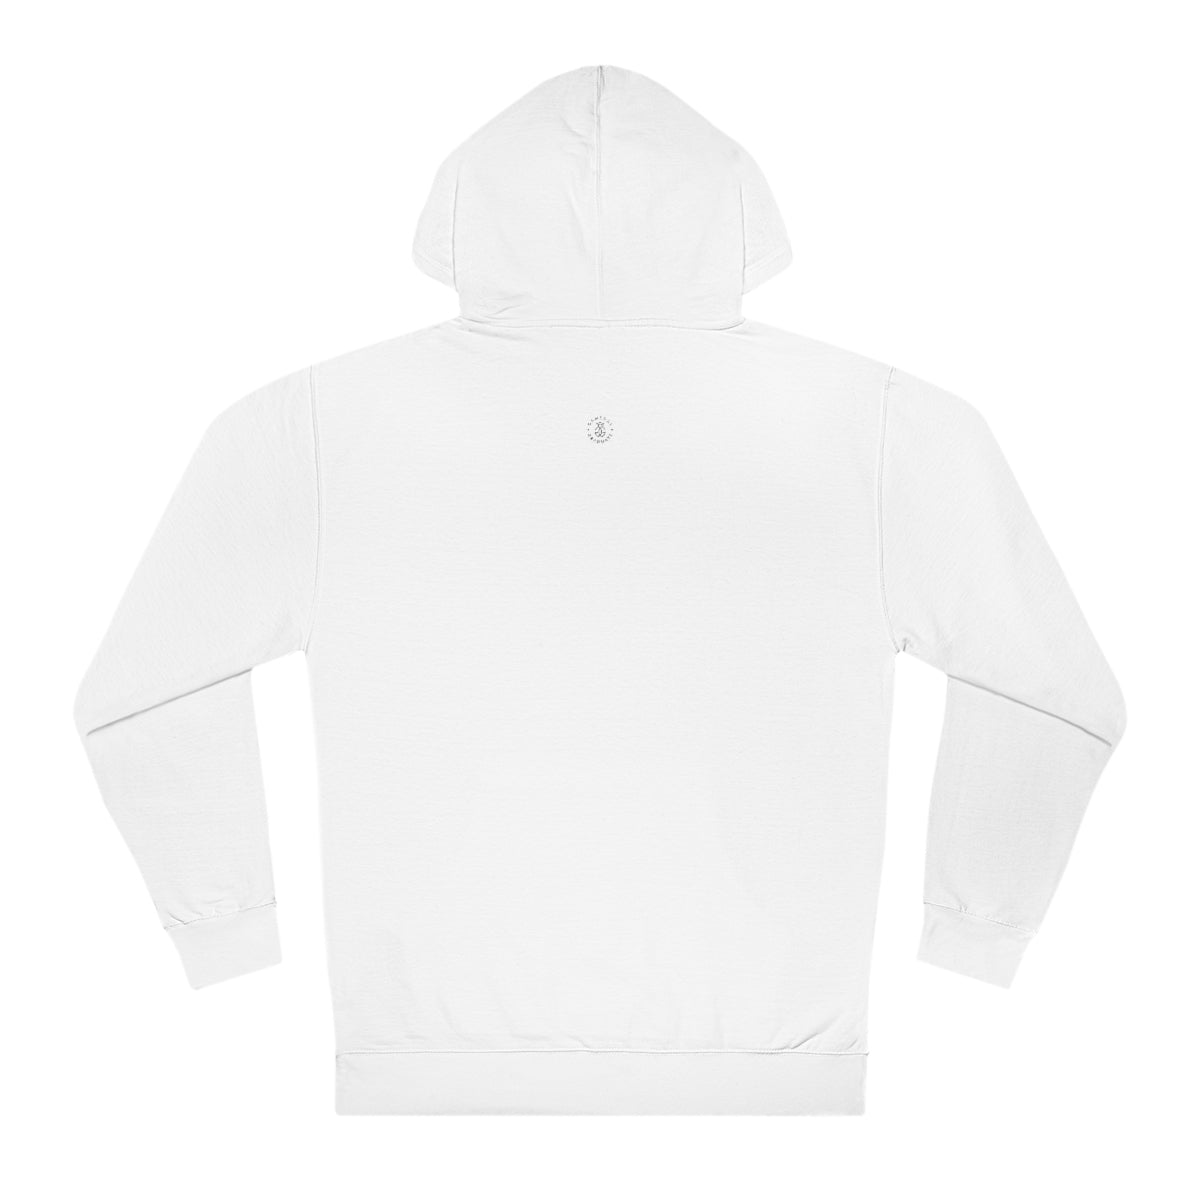 Illinois Hooded Sweatshirt - GG - ITC